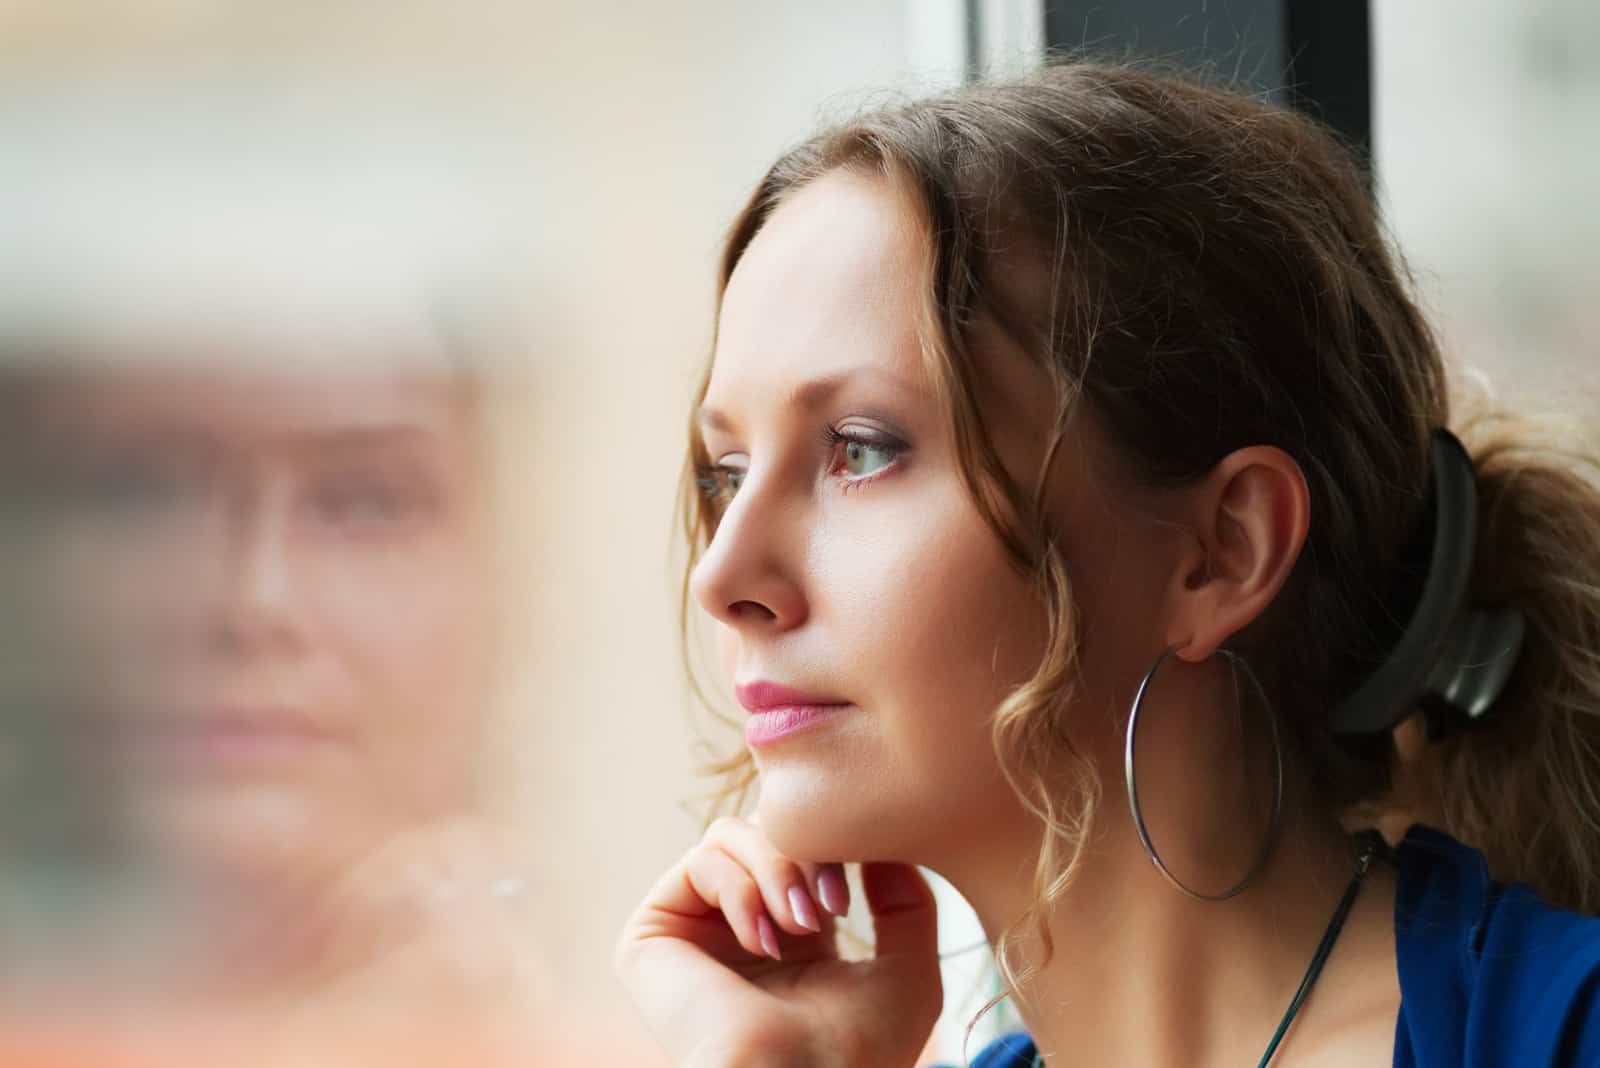 femme triste et contemplative regarde par la fenêtre